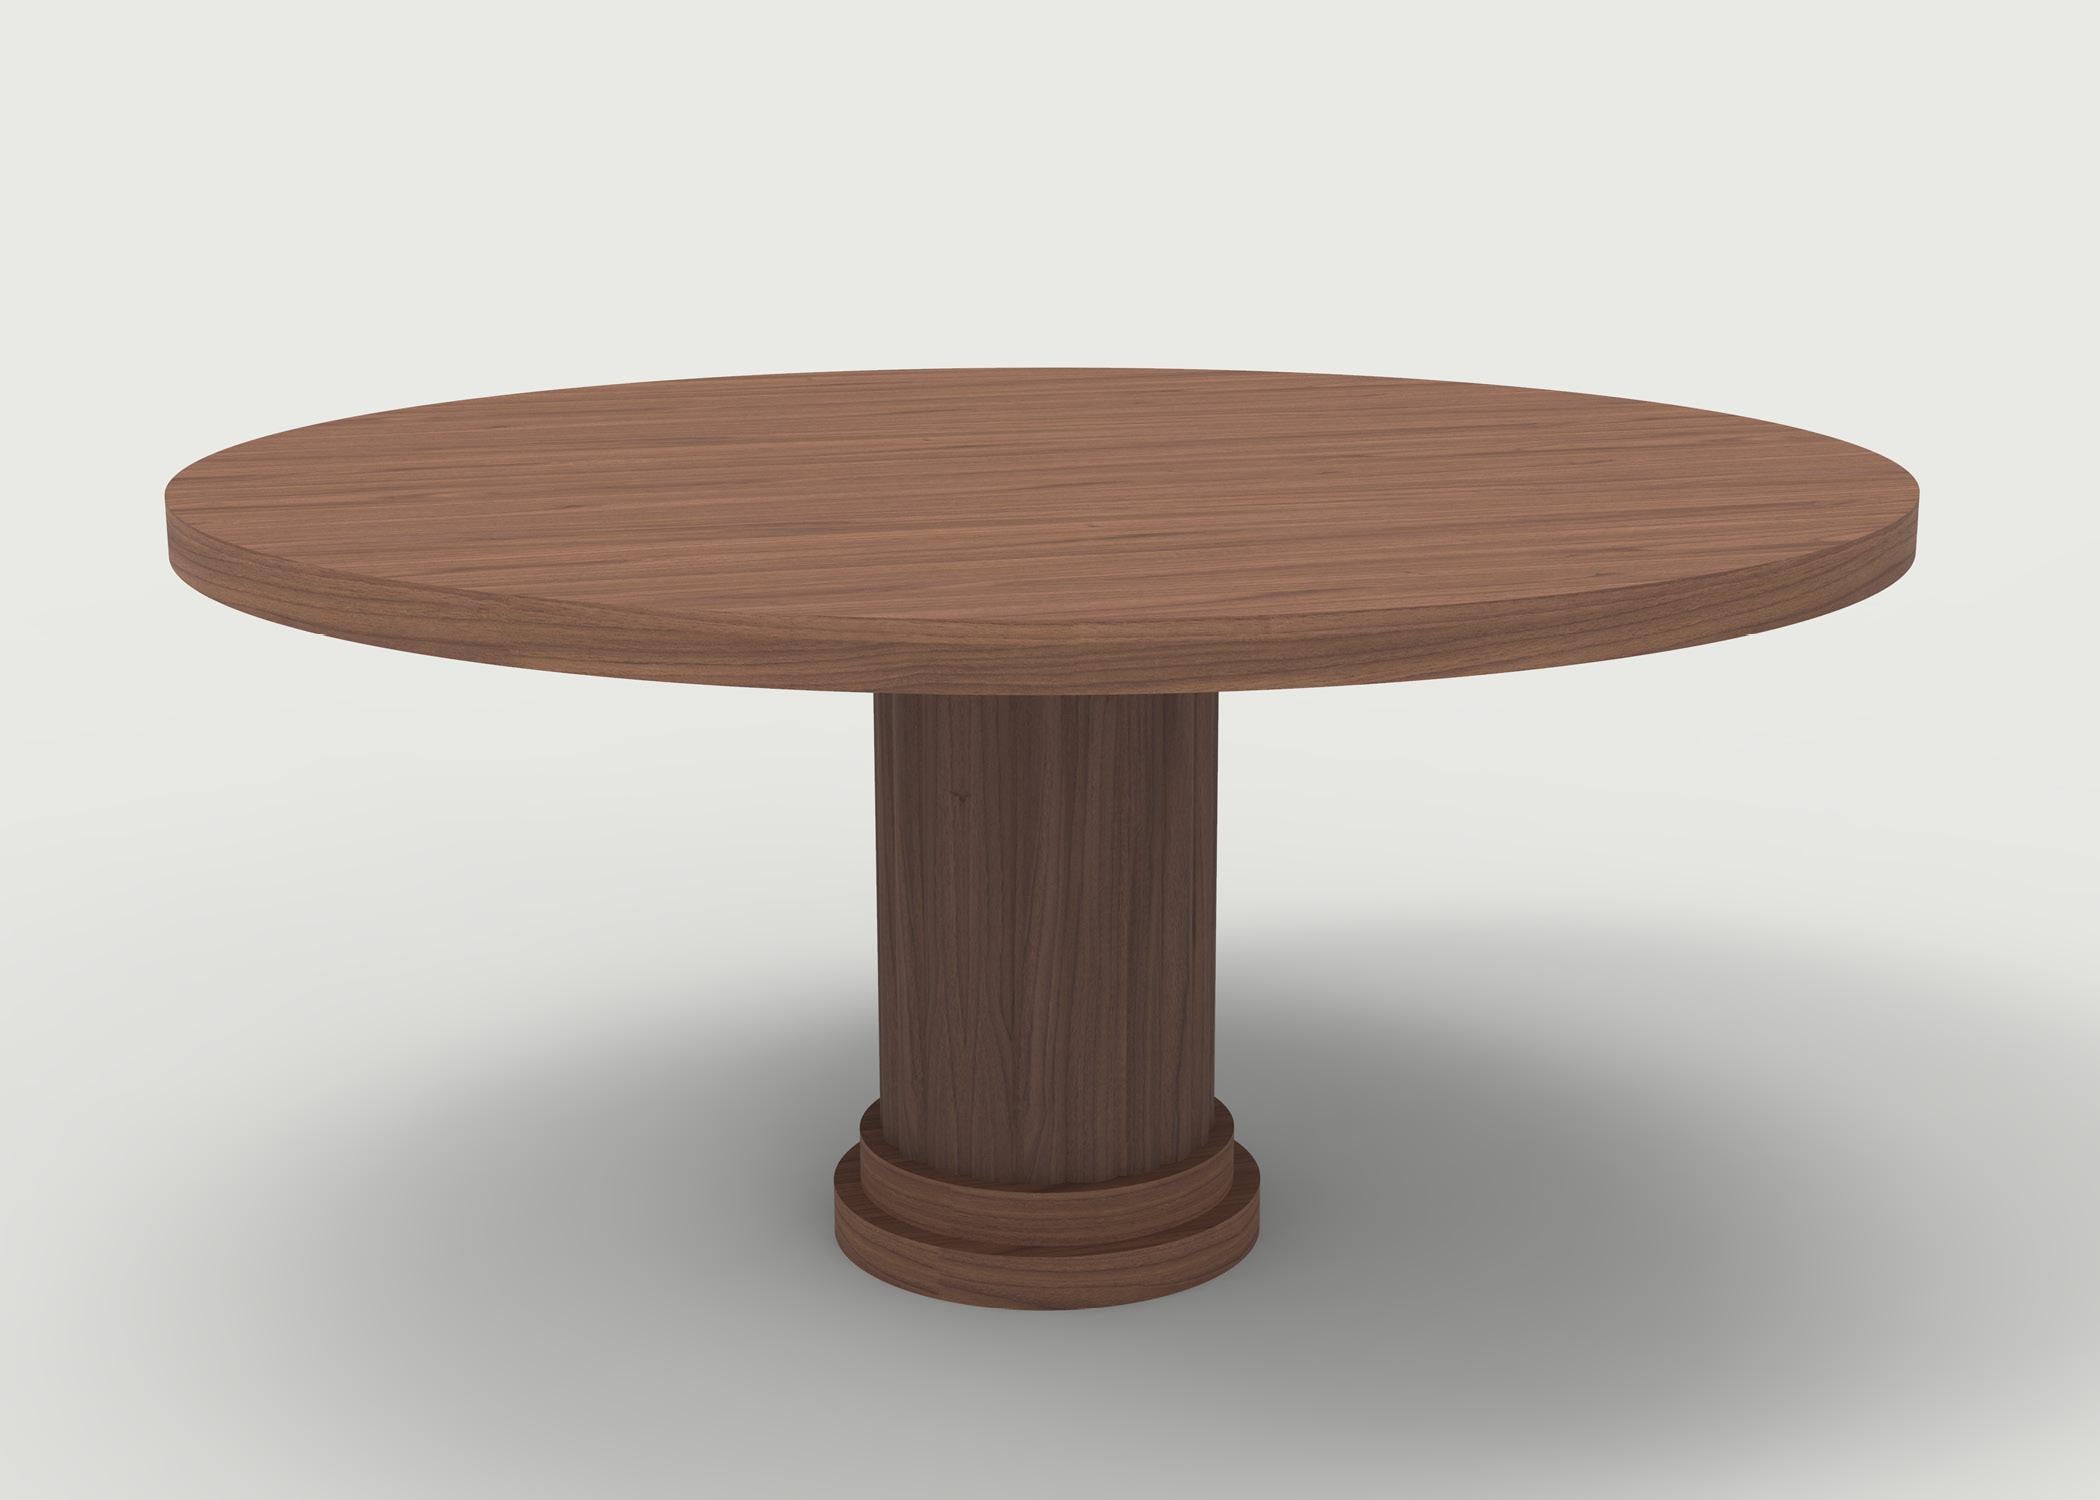 La table de salle à manger Vernon présentée avec un plateau en bois et une base en bois sculpté peut être personnalisée selon vos spécifications - elle peut être transformée en table basse et avoir un plateau ovale. Sculpté à la main dans notre